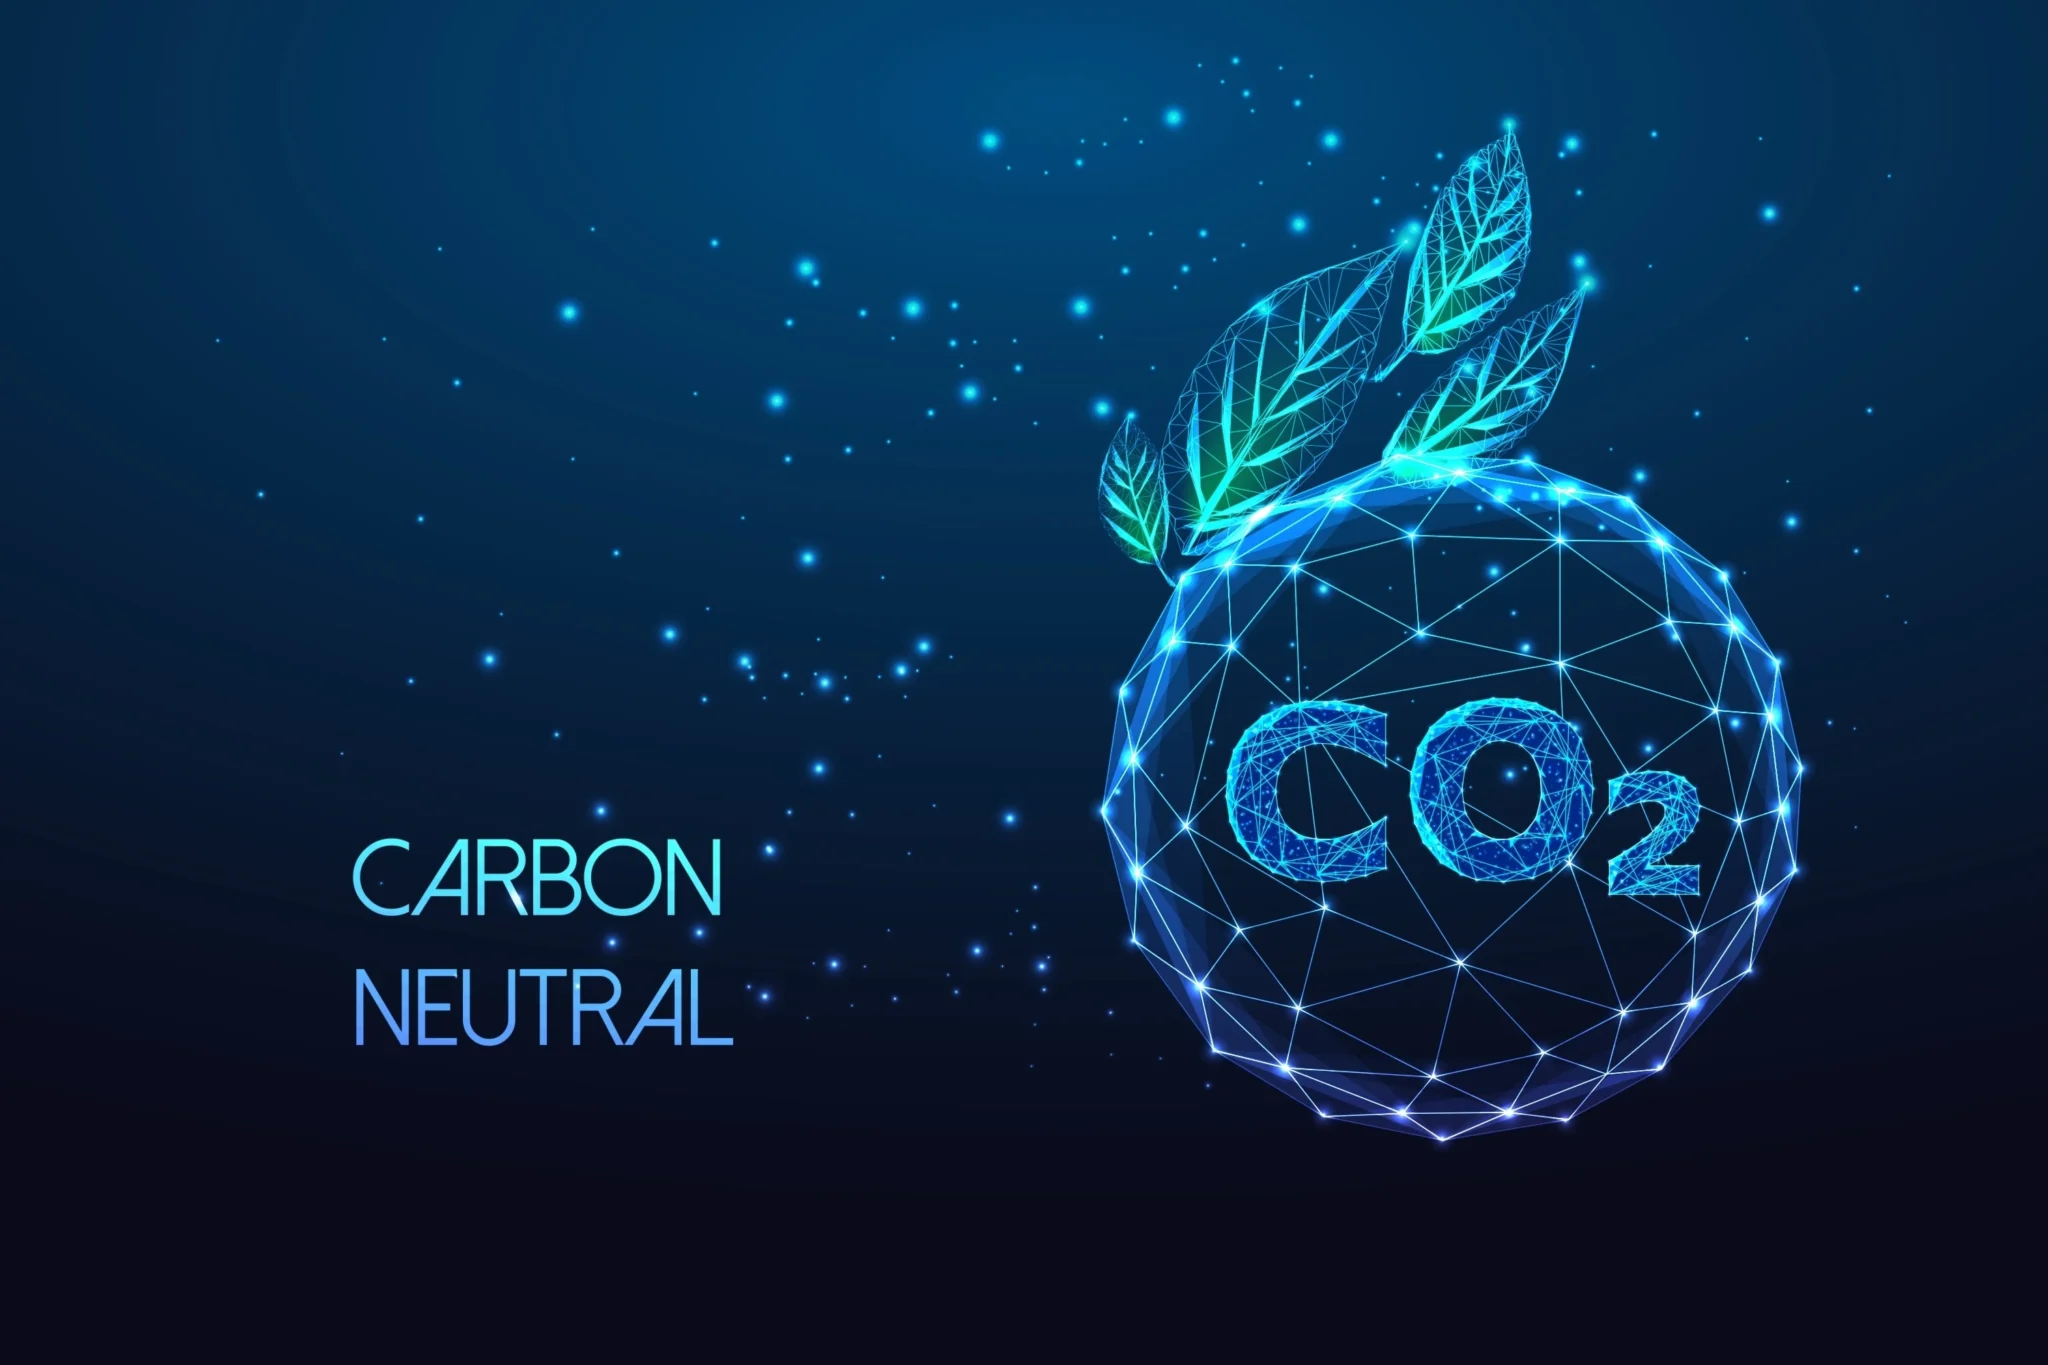 Visuel représentant une unité de crédit carbone contenant une tonne de gaz à effet de serre réduite ou séquestrée.